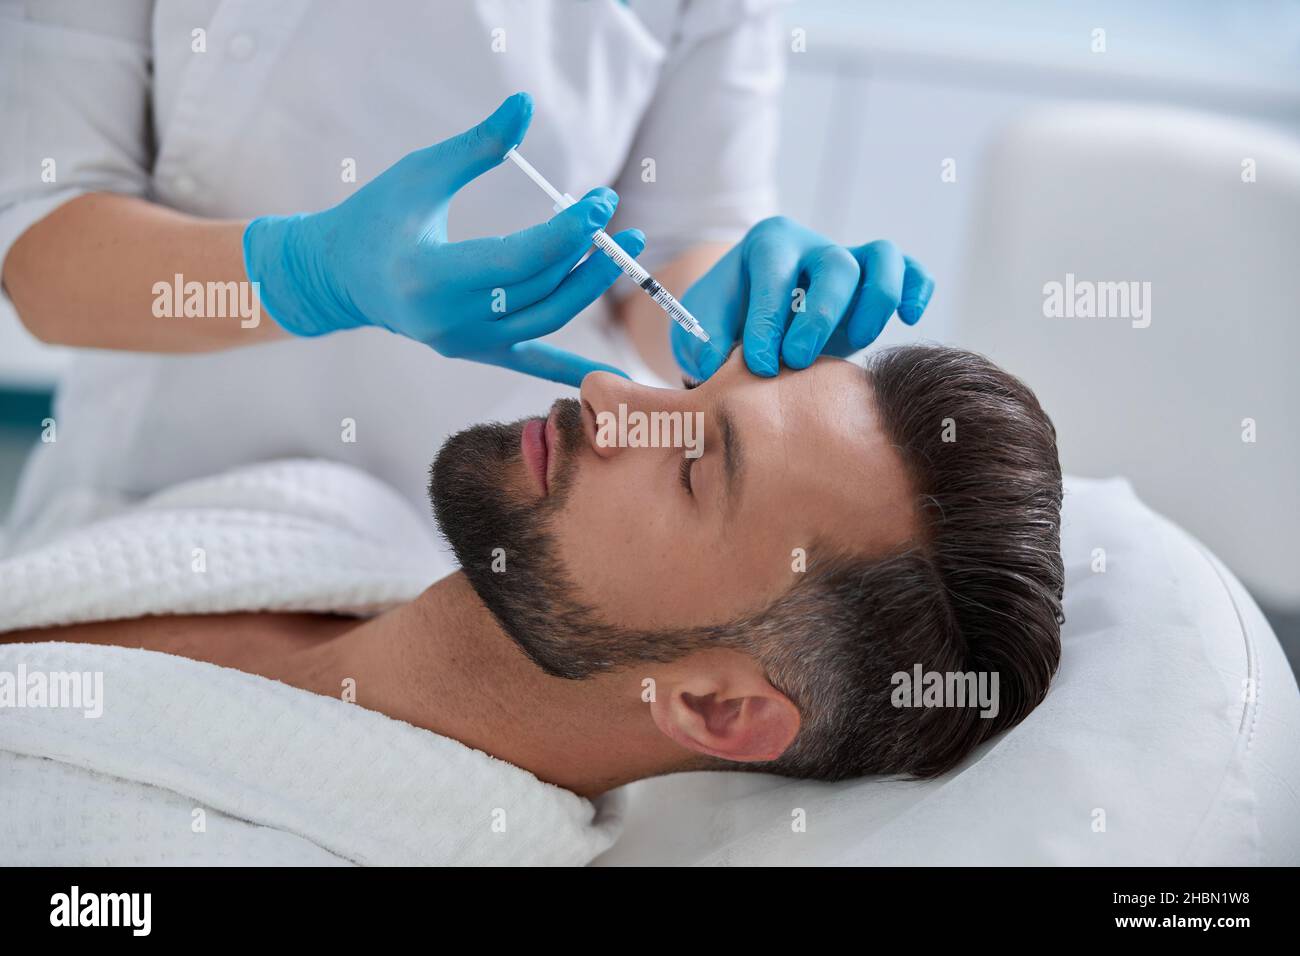 Esthéticienne en gants bleus fait l'injection à la procédure de levage des sourcils au patient mature dans la clinique Banque D'Images